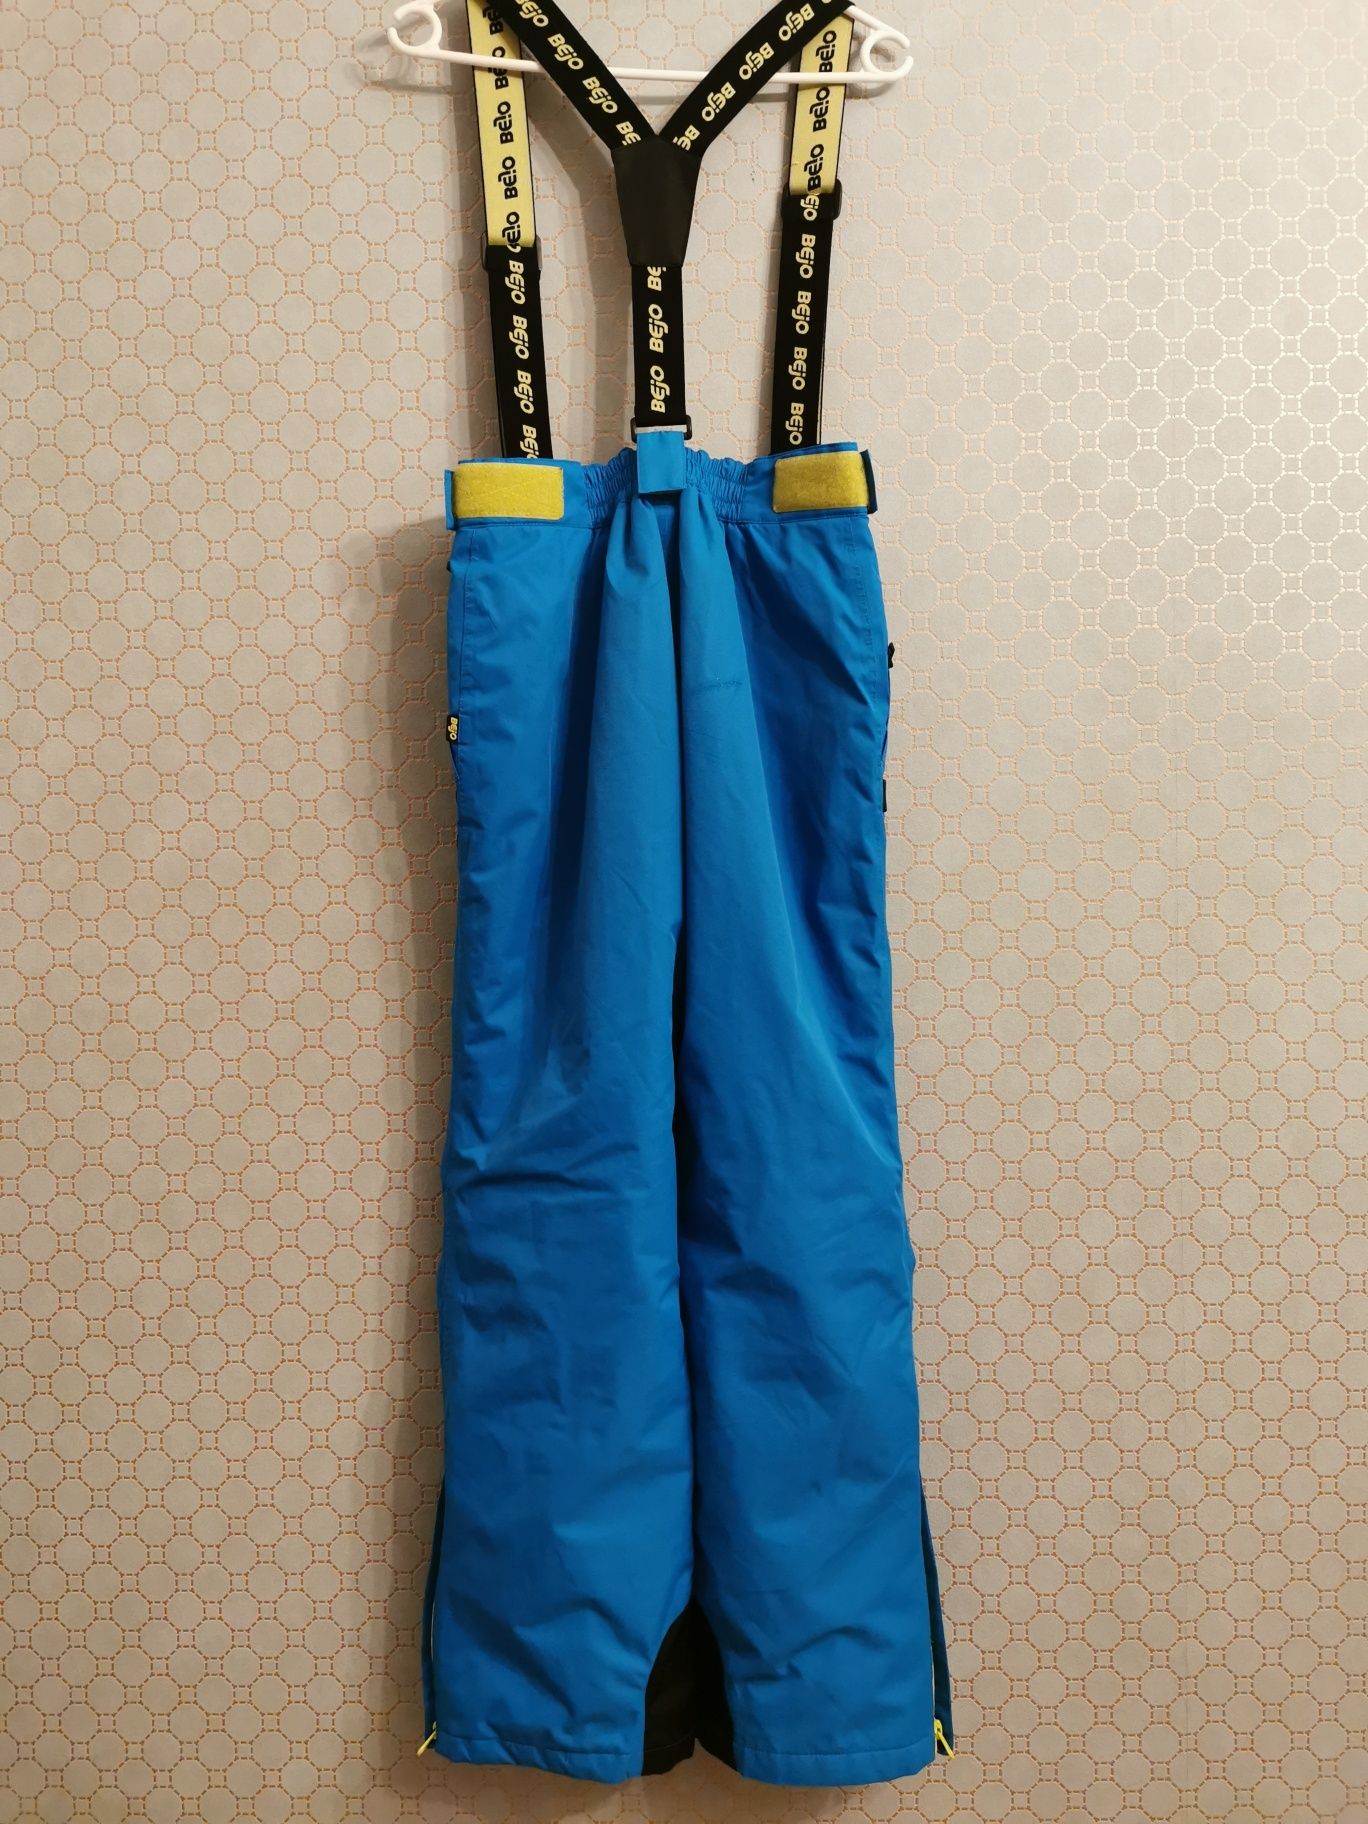 Spodnie narciarskie chłopięce BEJO rozmiar 158cm